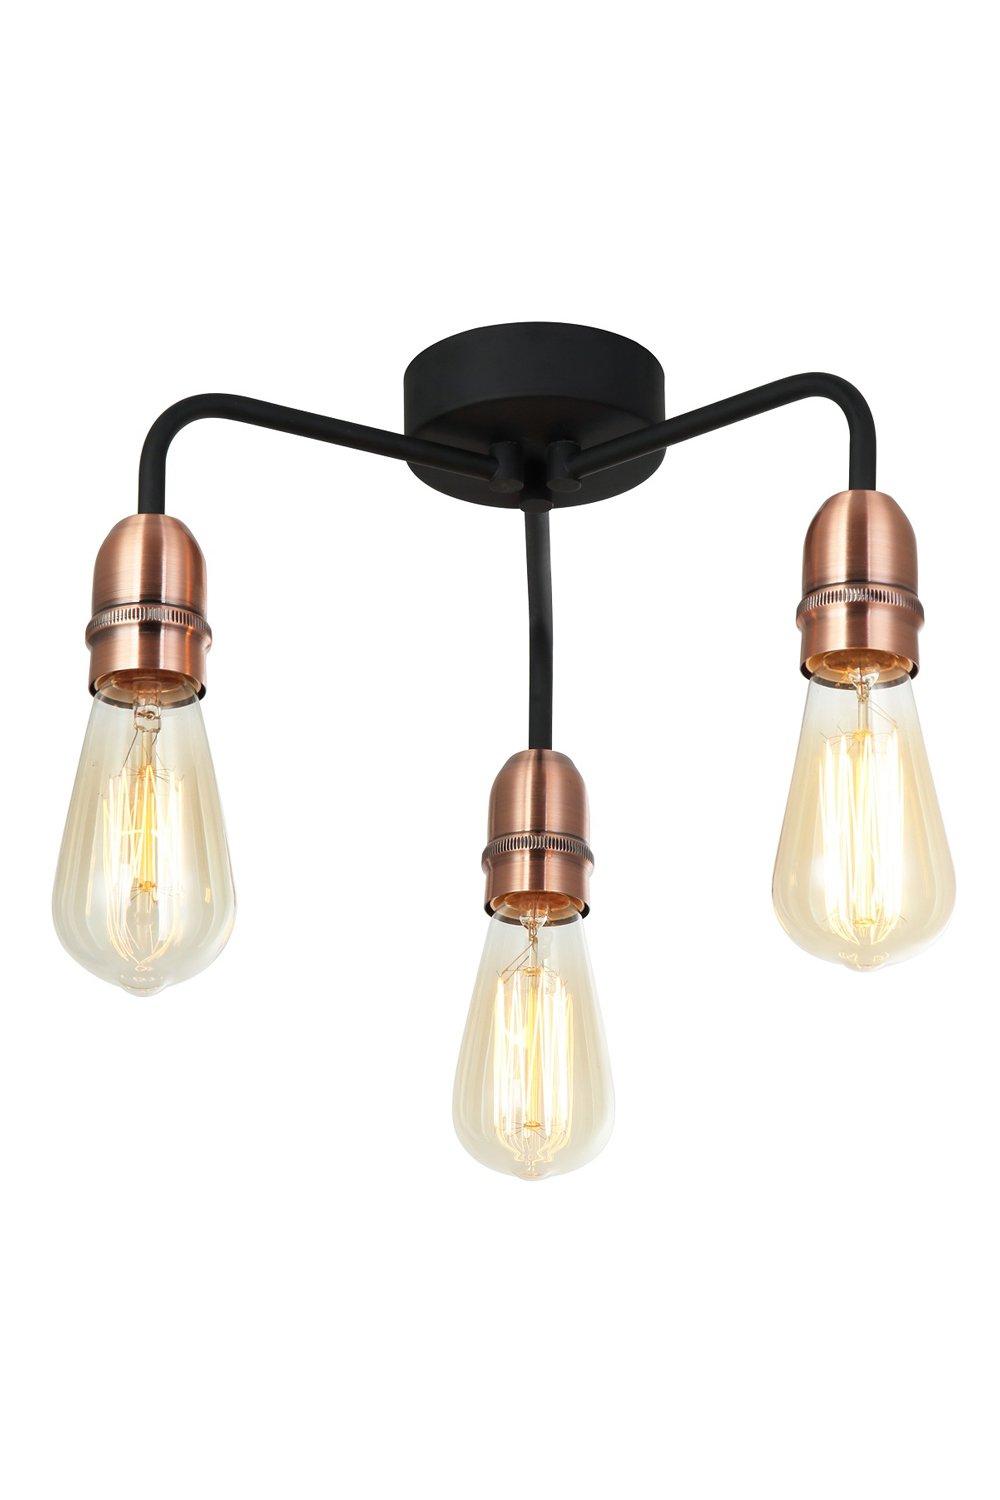 3 Light Semi Flush Ceiling Light, E27/ES Bulb Cap, Dimmable, Drop Arms